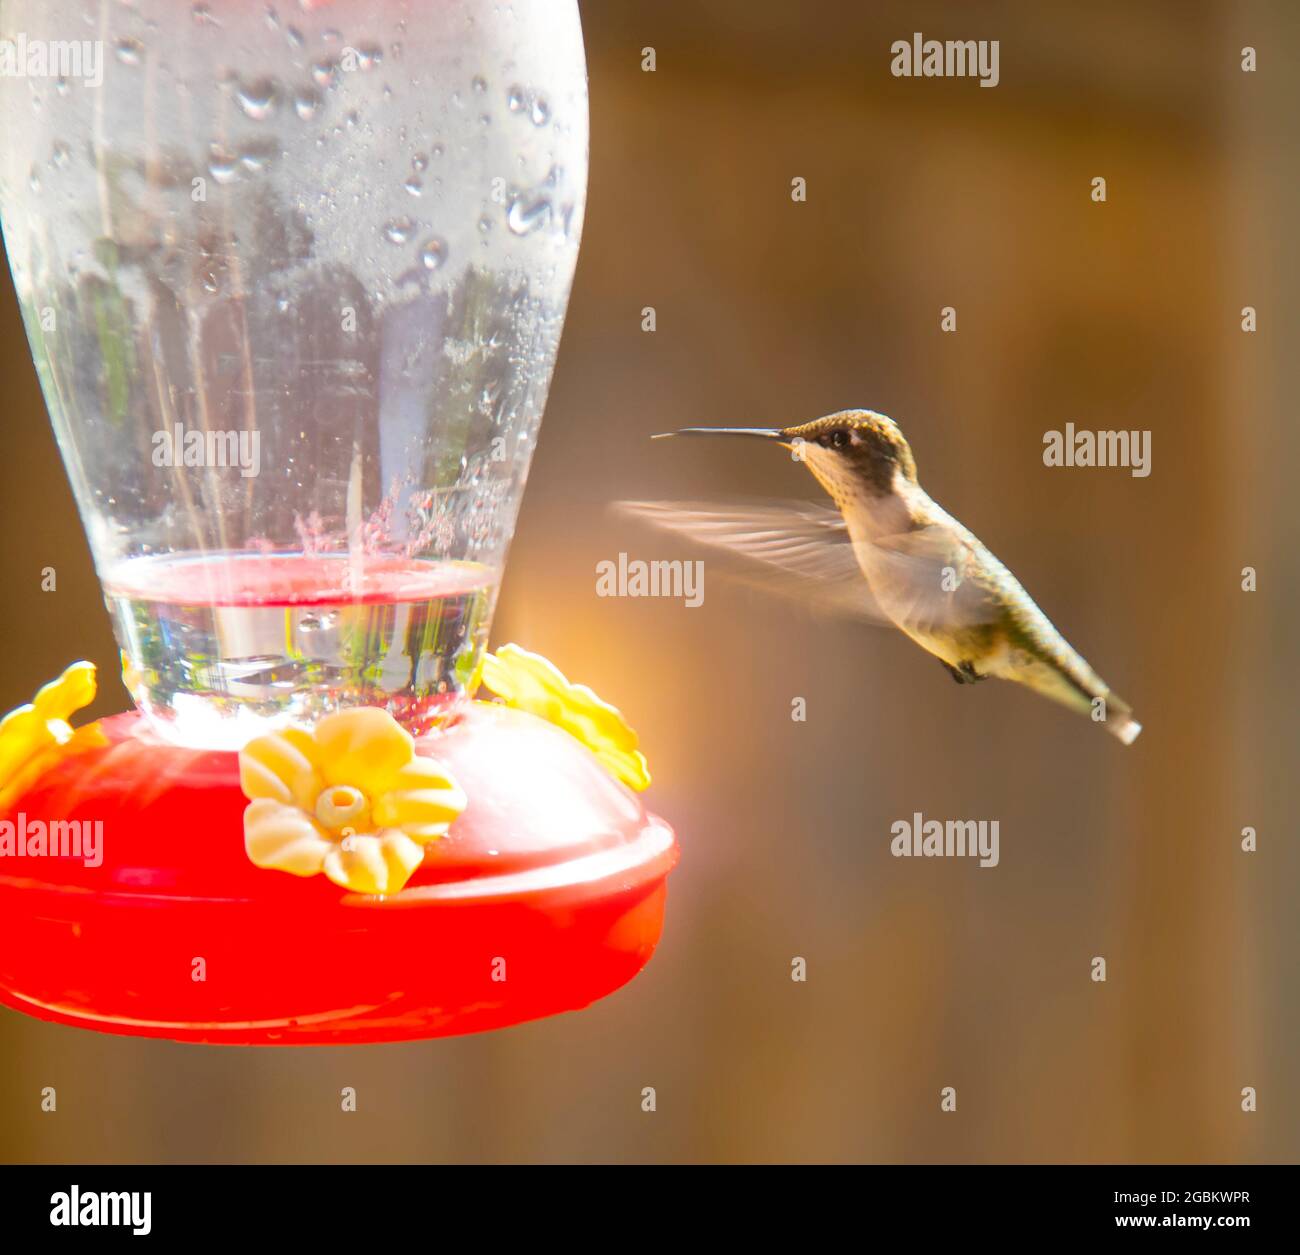 Kolibri schwebte in der Nähe des Feeders mit seiner Zunge aus, dass seine verwendet, um bis Nektar vor einem orangisch braunen unscharfen Hintergrund schlürfen Stockfoto